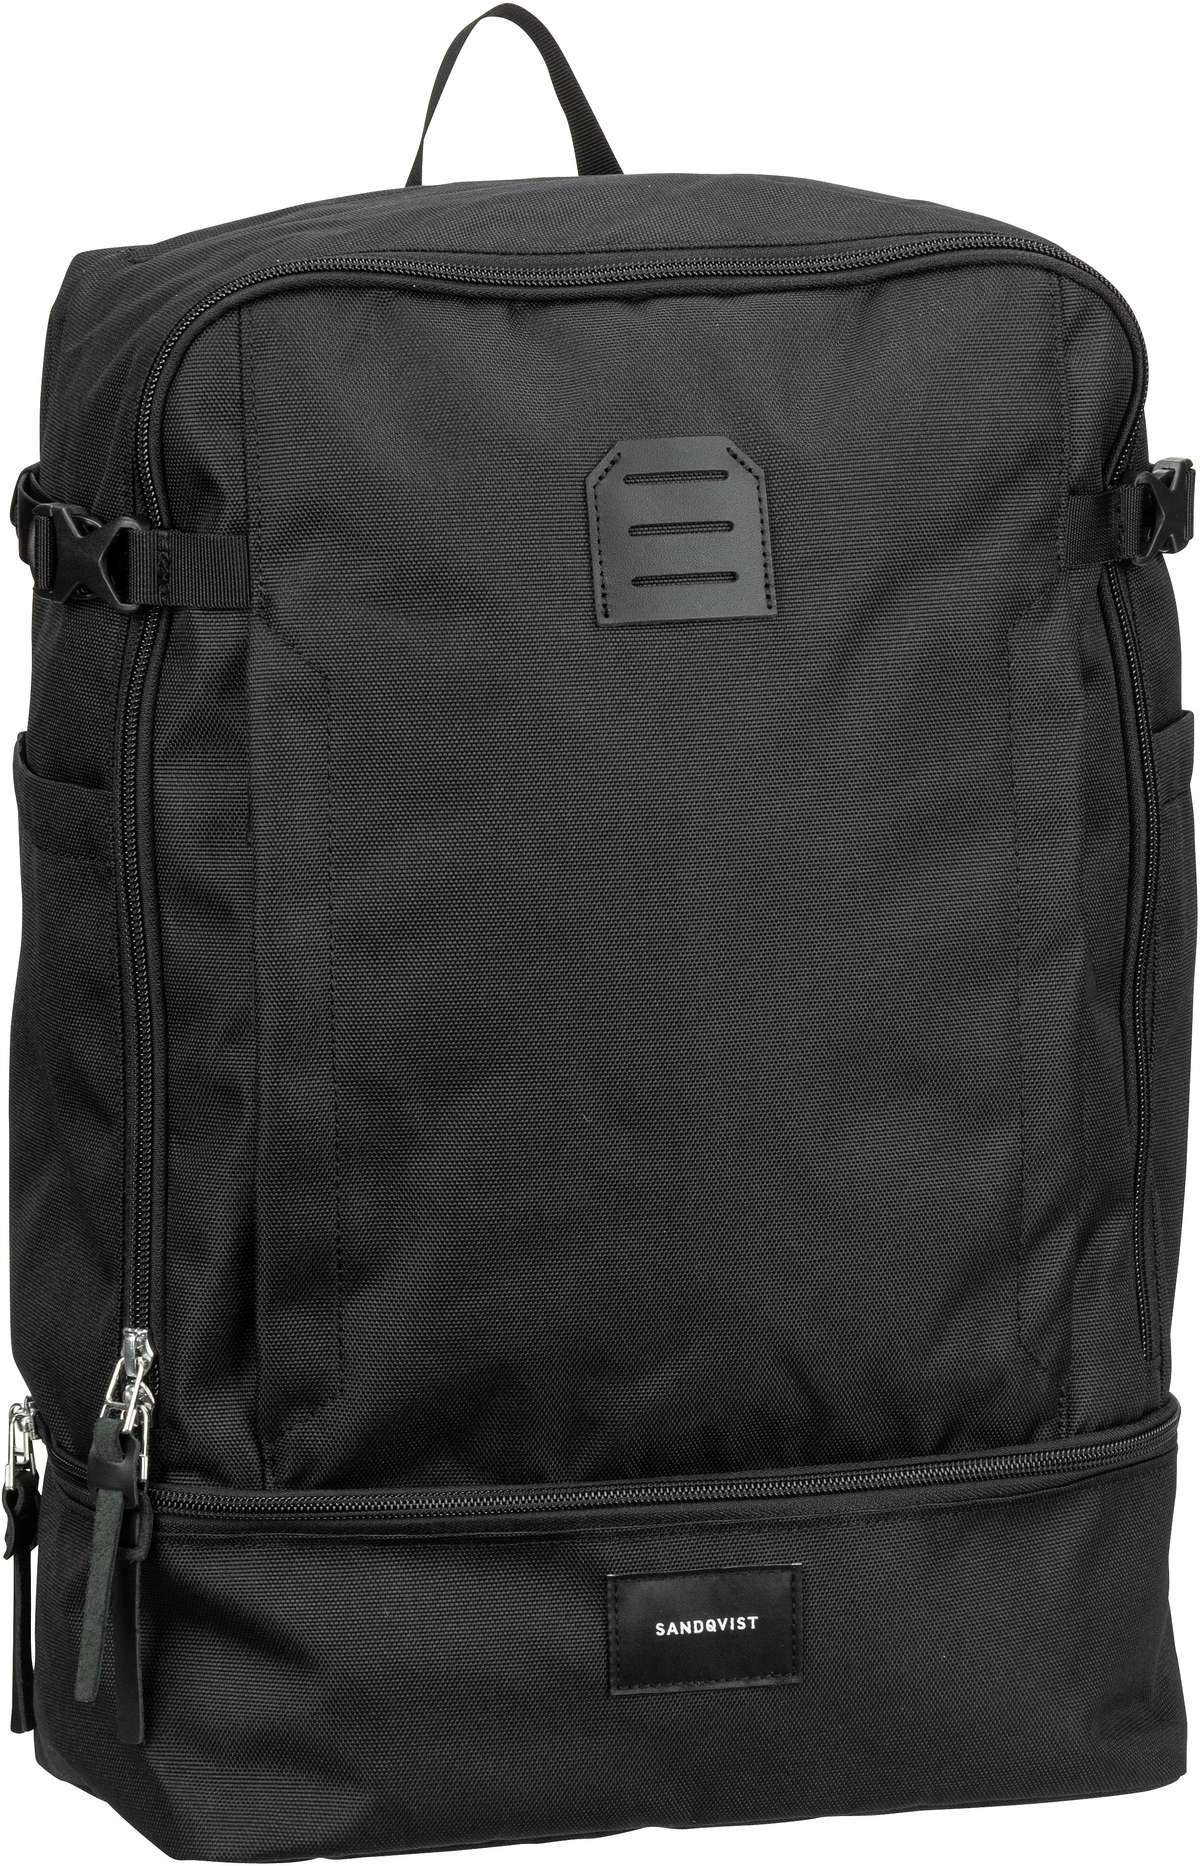 Sandqvist Alde Backpack  in Black (28 Liter), Rucksack / Backpack